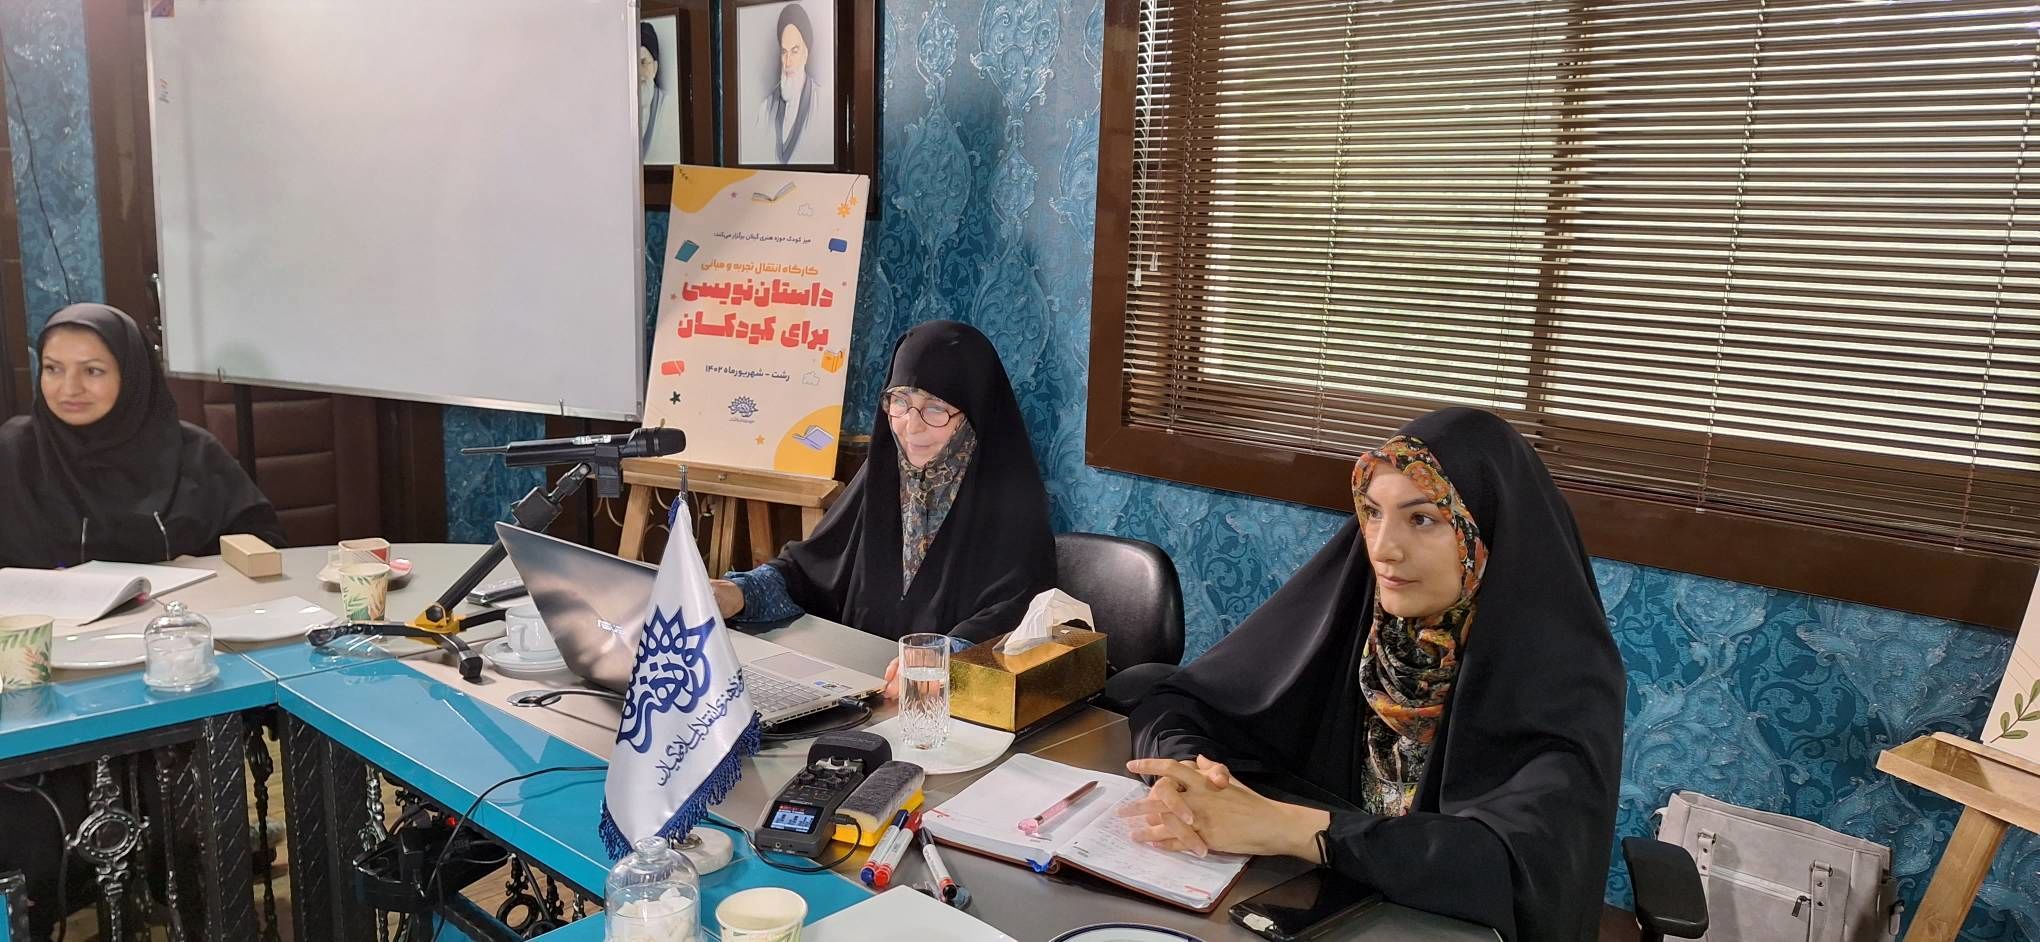 کارگاه نویسندگی کودک در رشت برگزار شد